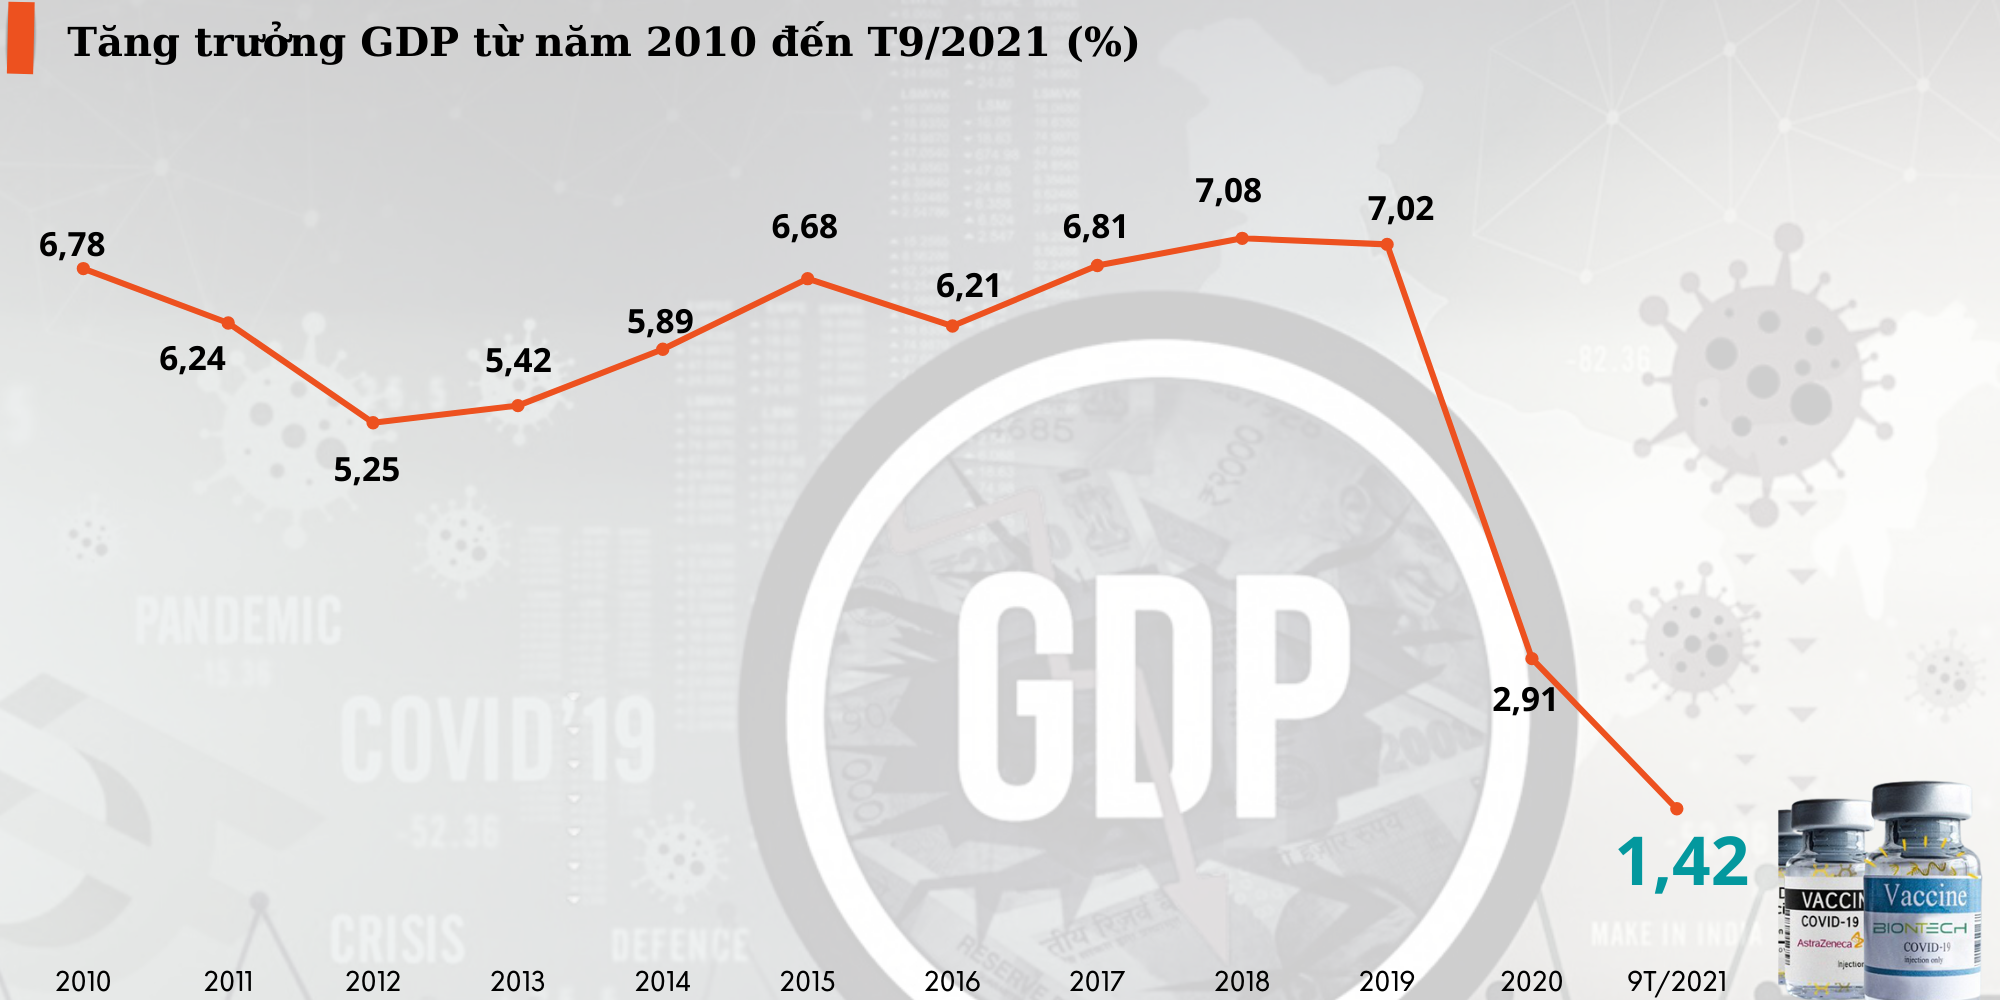 Sáng 21/12 sẽ diễn ra Tọa đàm “Kinh tế 2022: Phục hồi tăng trưởng trong bối cảnh bình thường mới” - Ảnh 1.